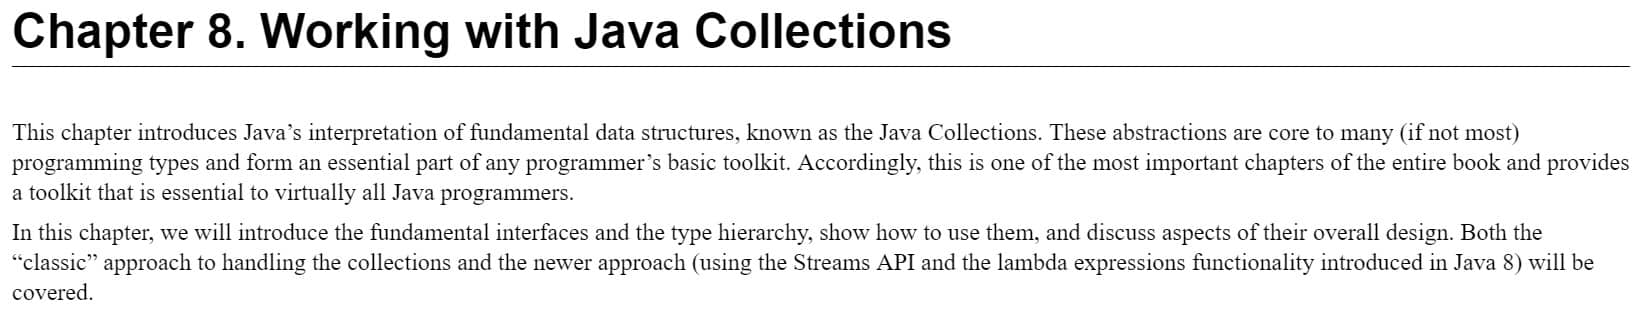 فصل 8 کتاب Java in a Nutshell ویرایش هشتم